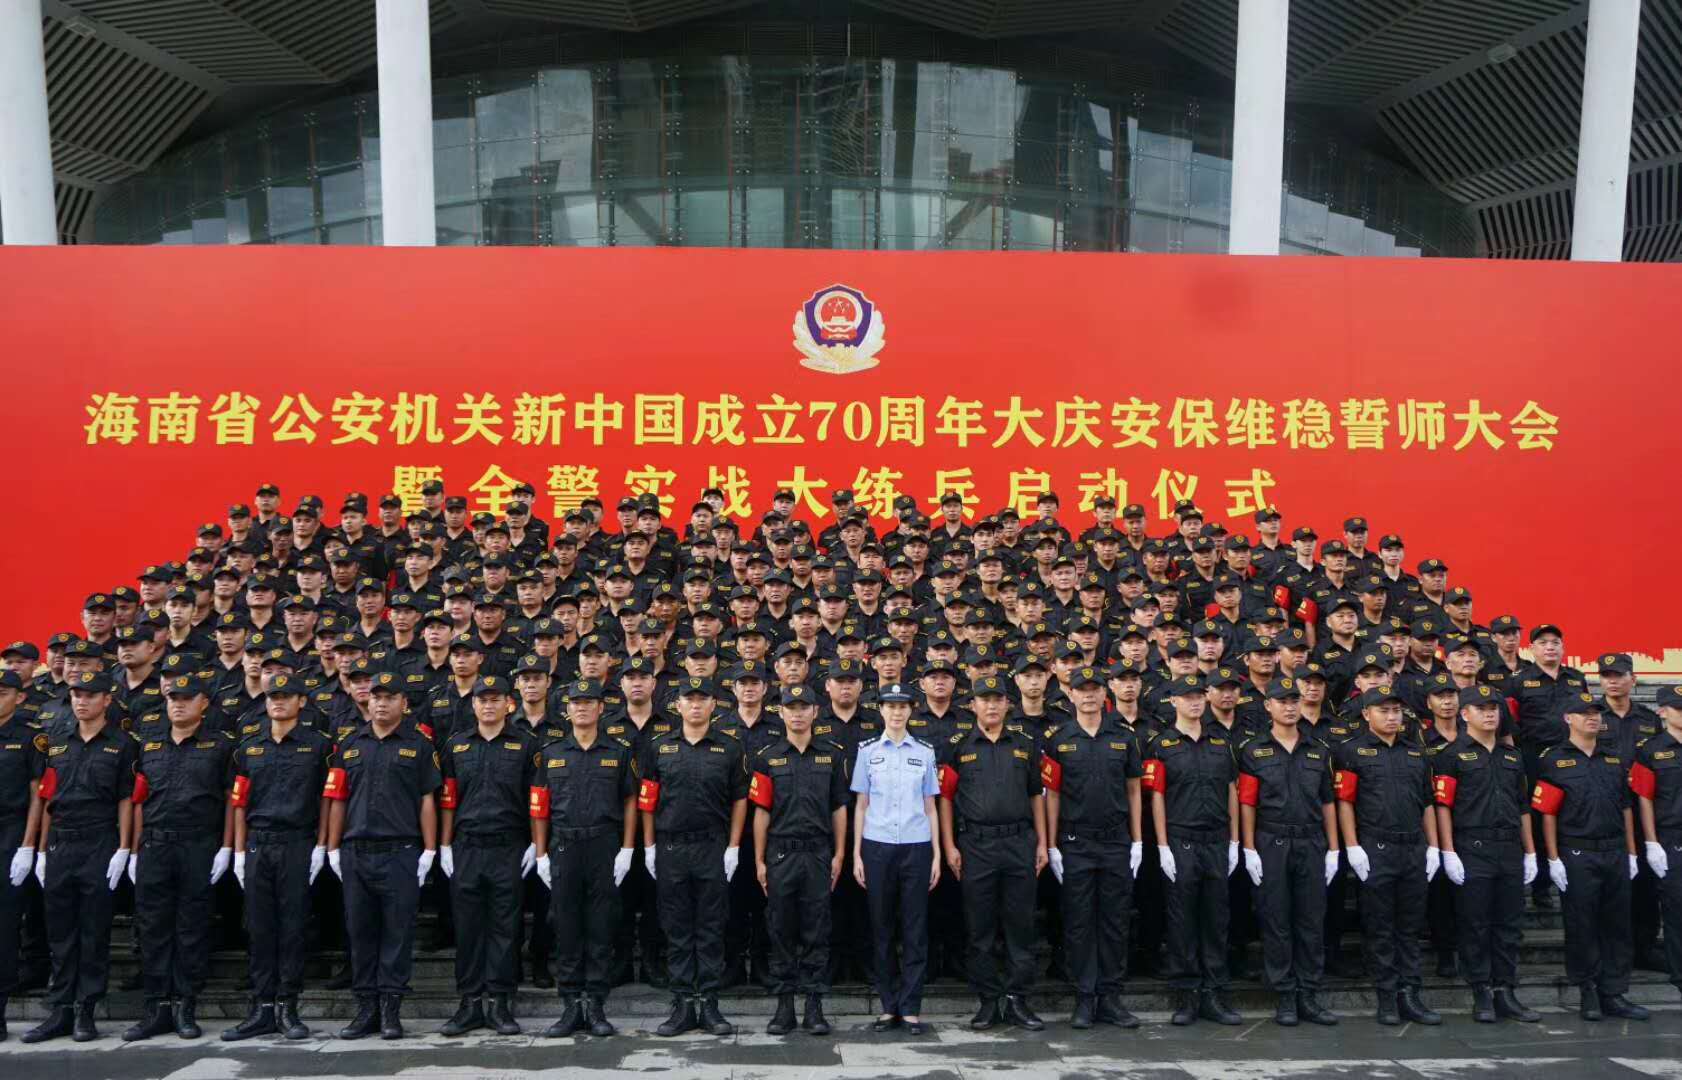 新中国成立70周年大庆安保练兵仪式